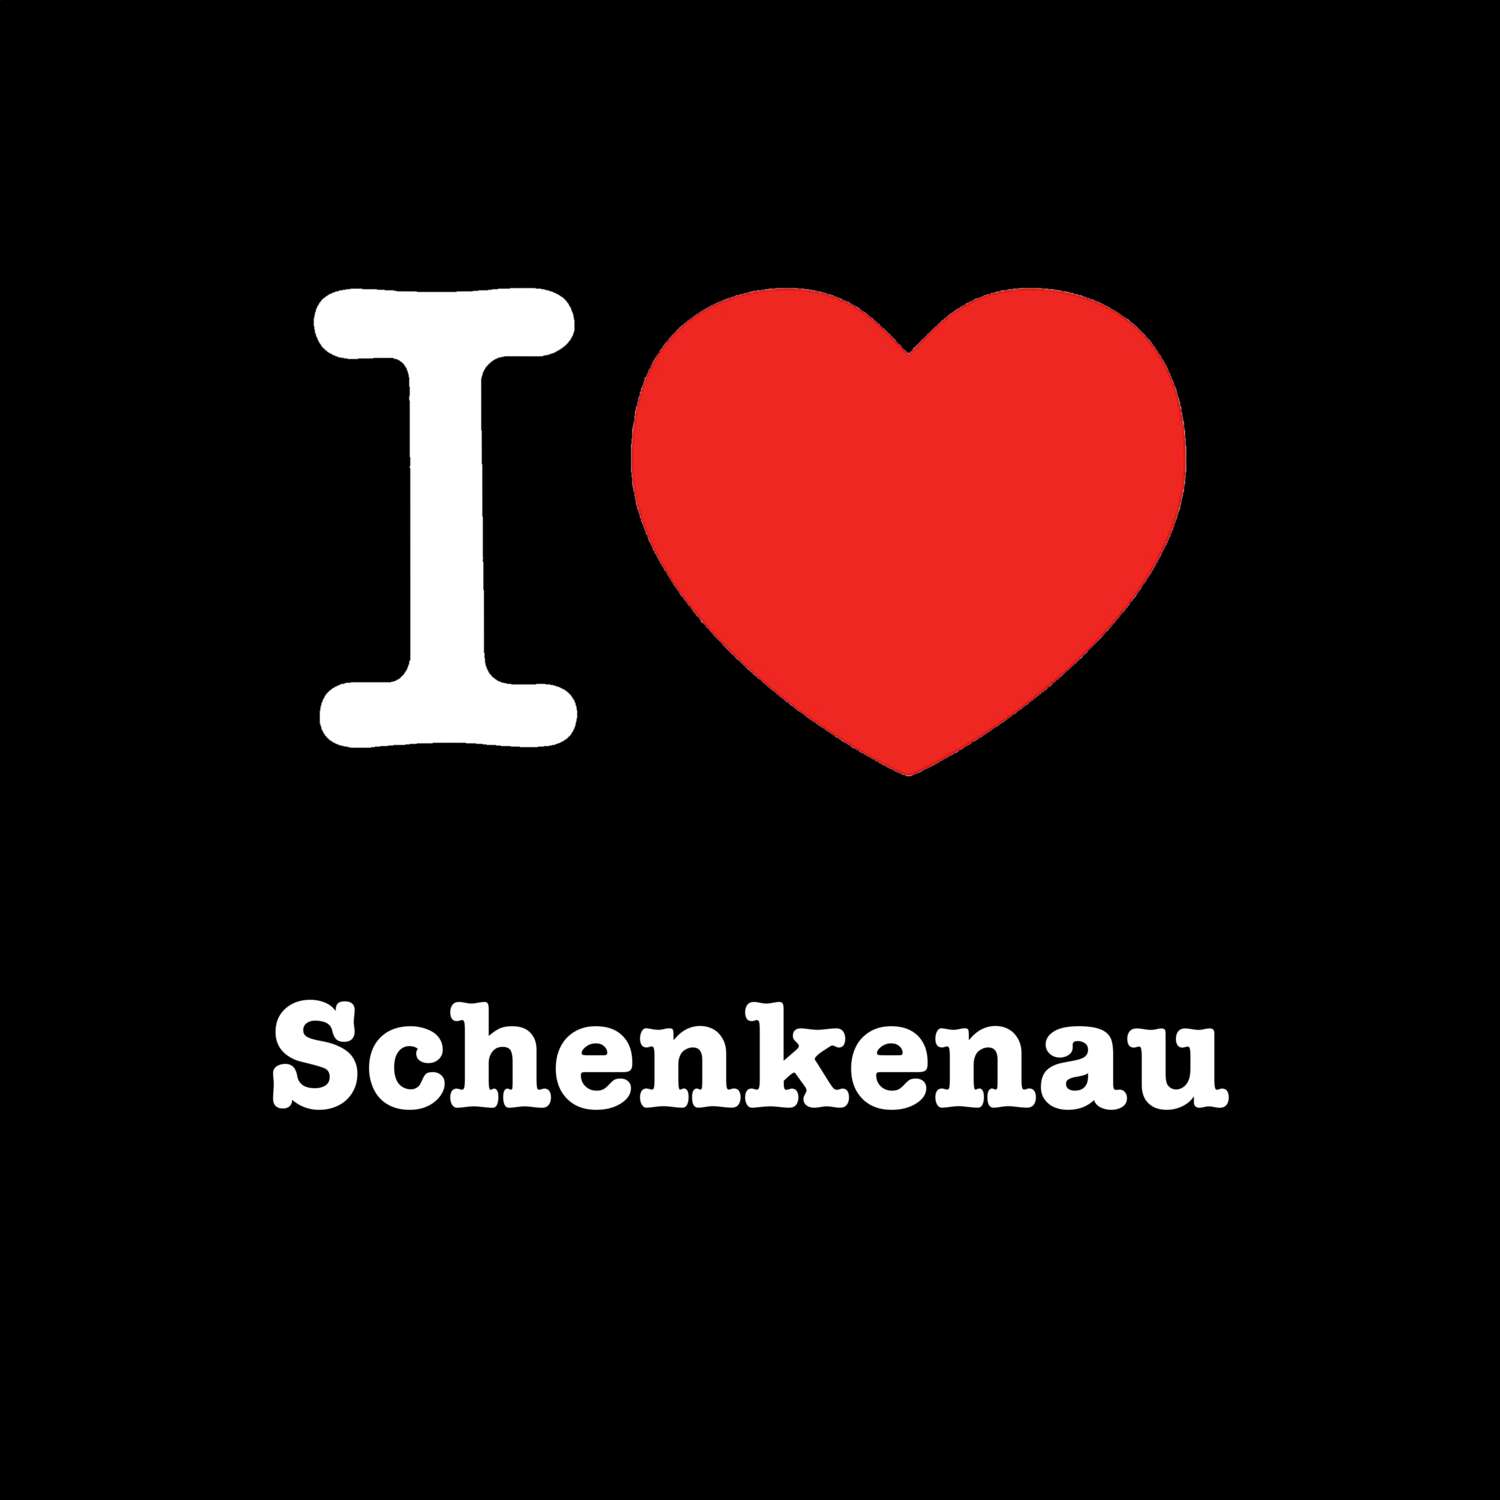 Schenkenau T-Shirt »I love«